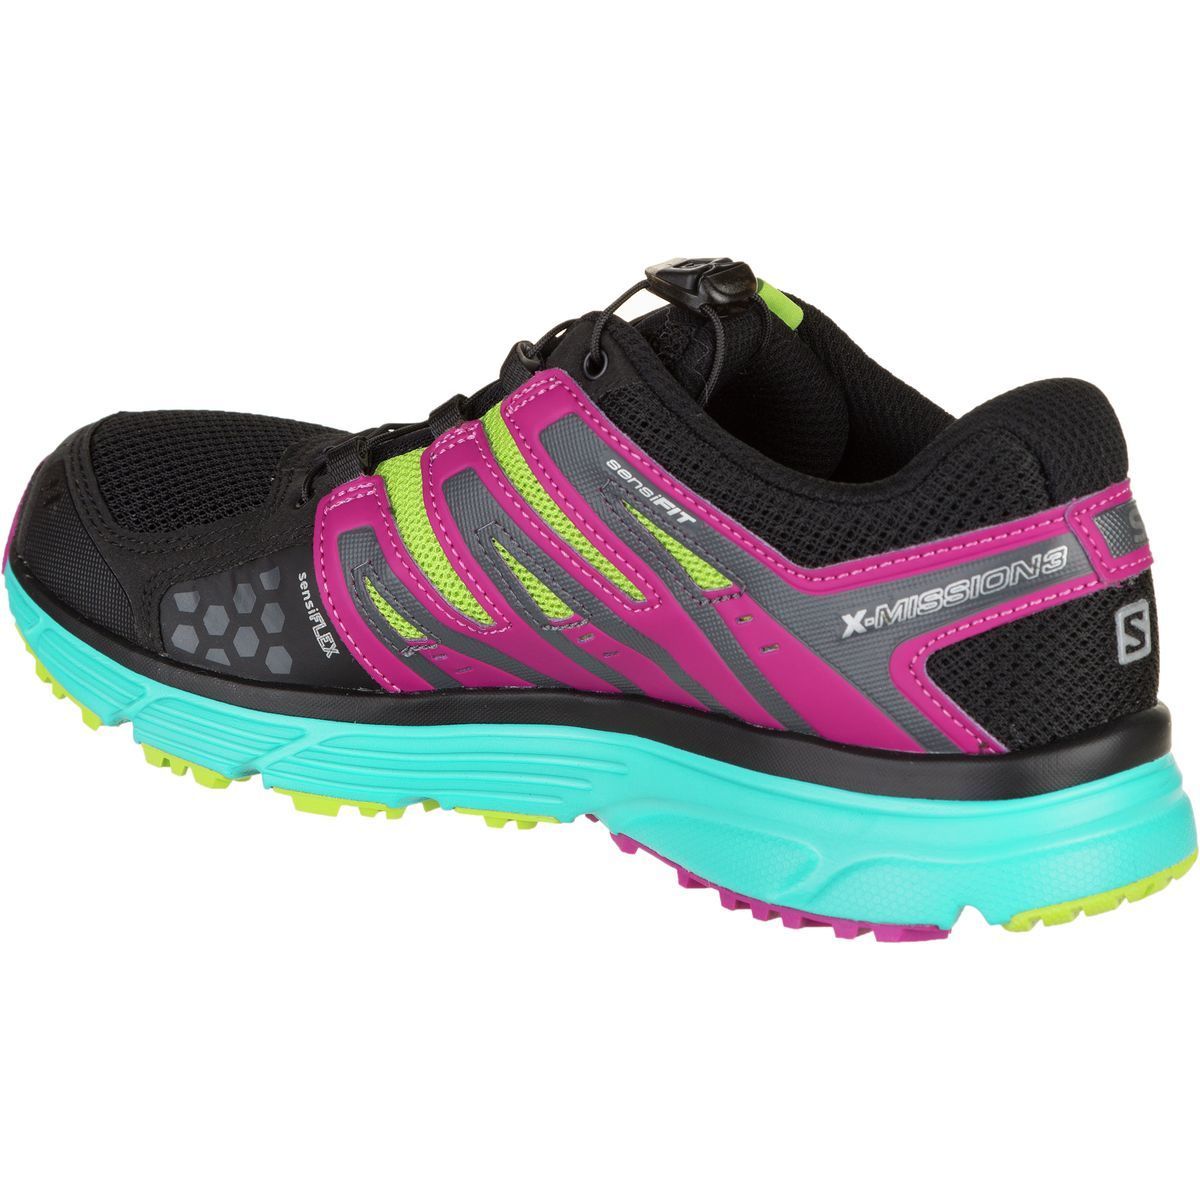 Salomon X-Mission 3 CS Trail Running Shoe - Women's - Footwear